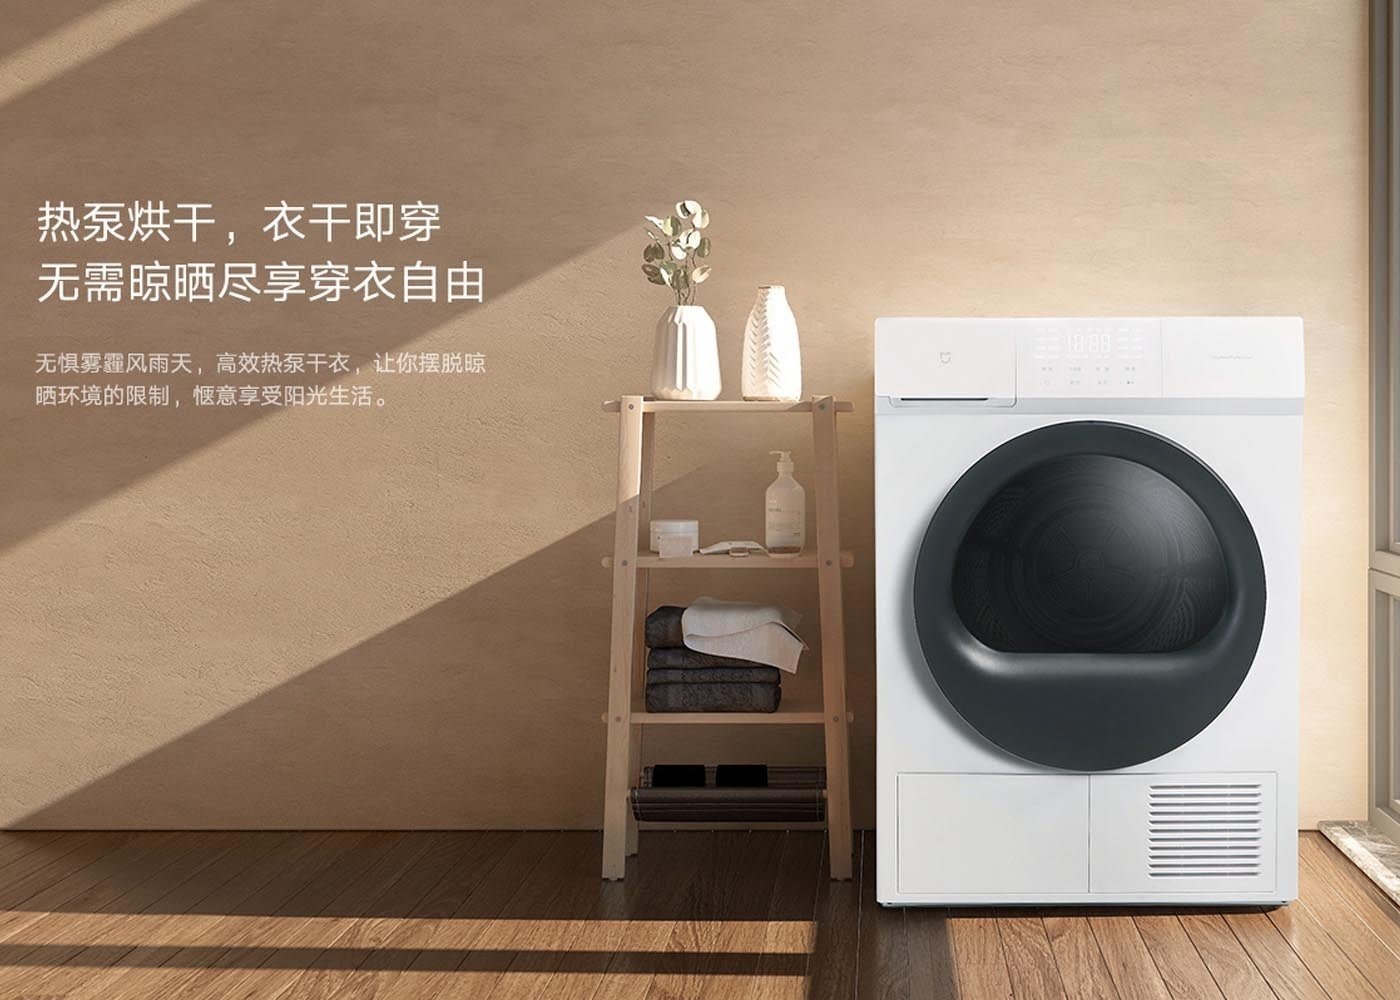 Xiaomi tiene a la venta una nueva secadora de ropa